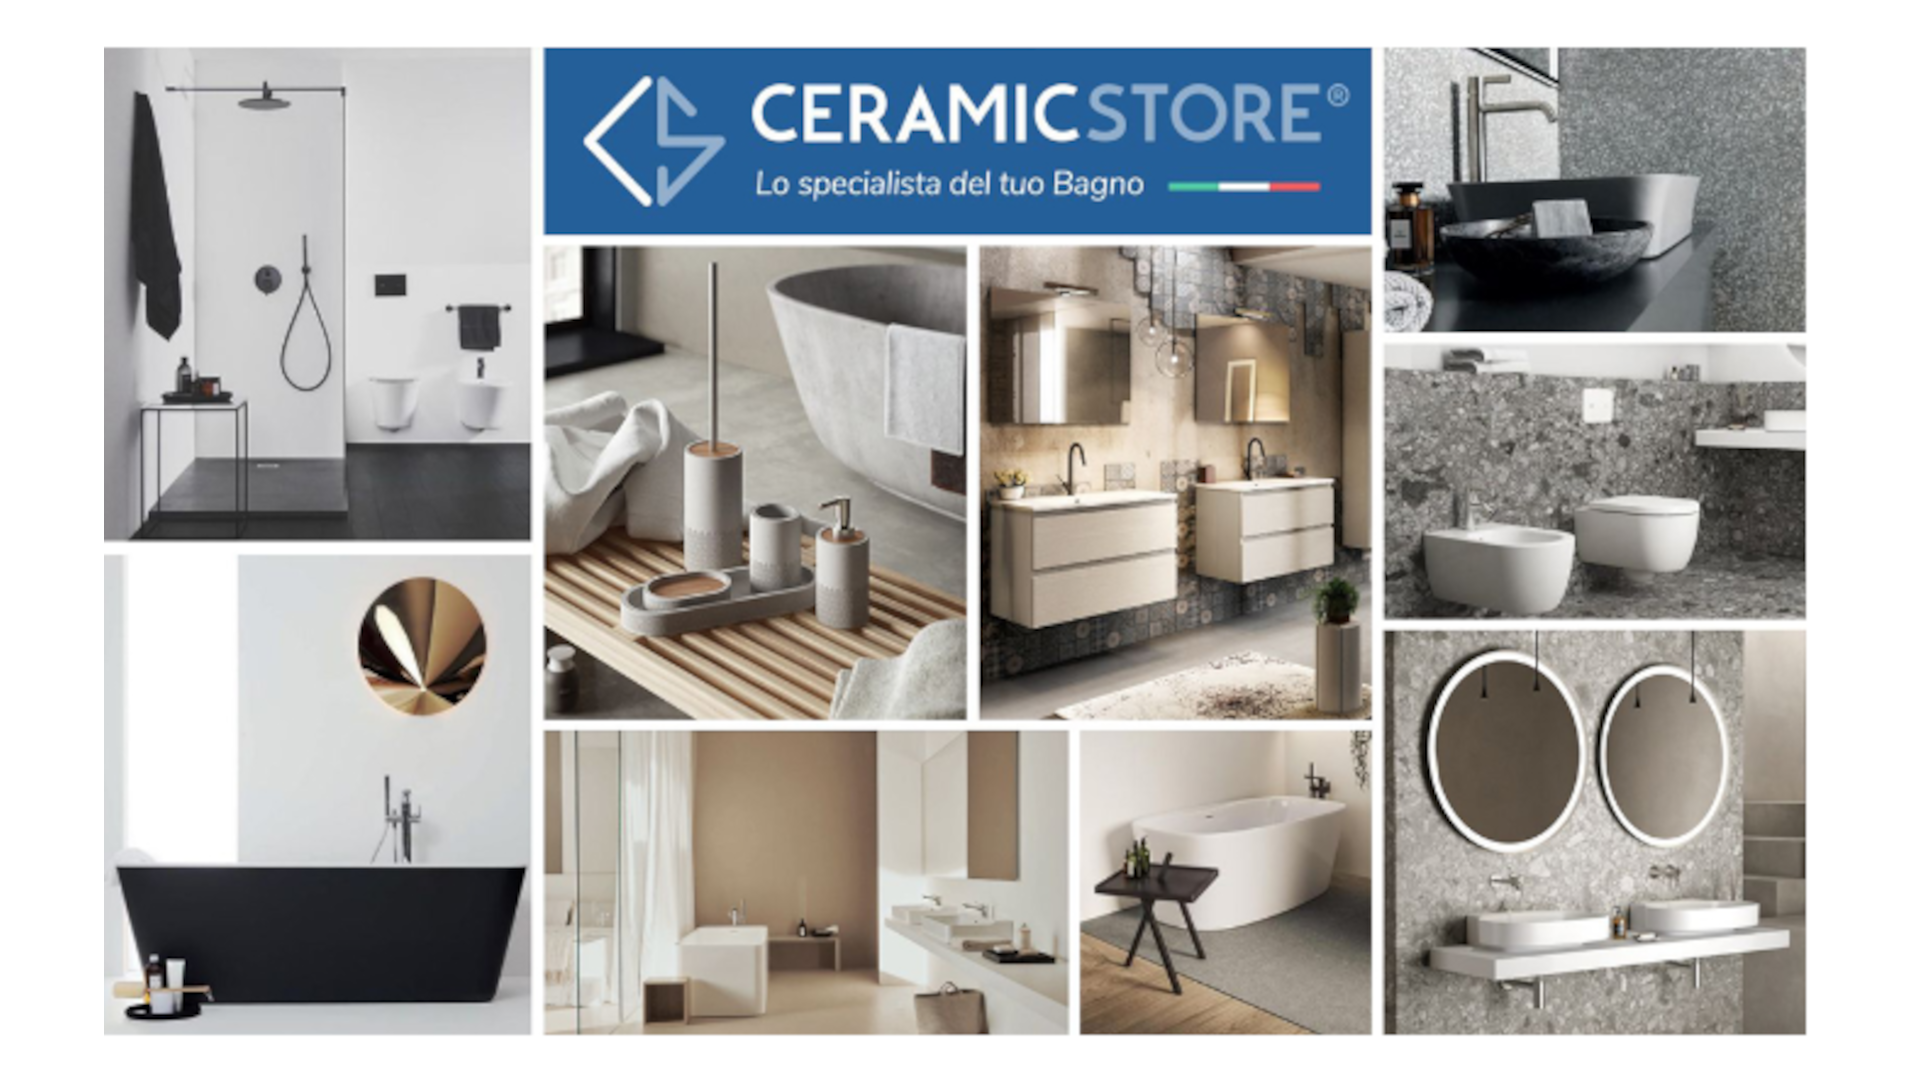 Excelencia Made in Italy: CeramicStore y la calidad italiana en los muebles de baño